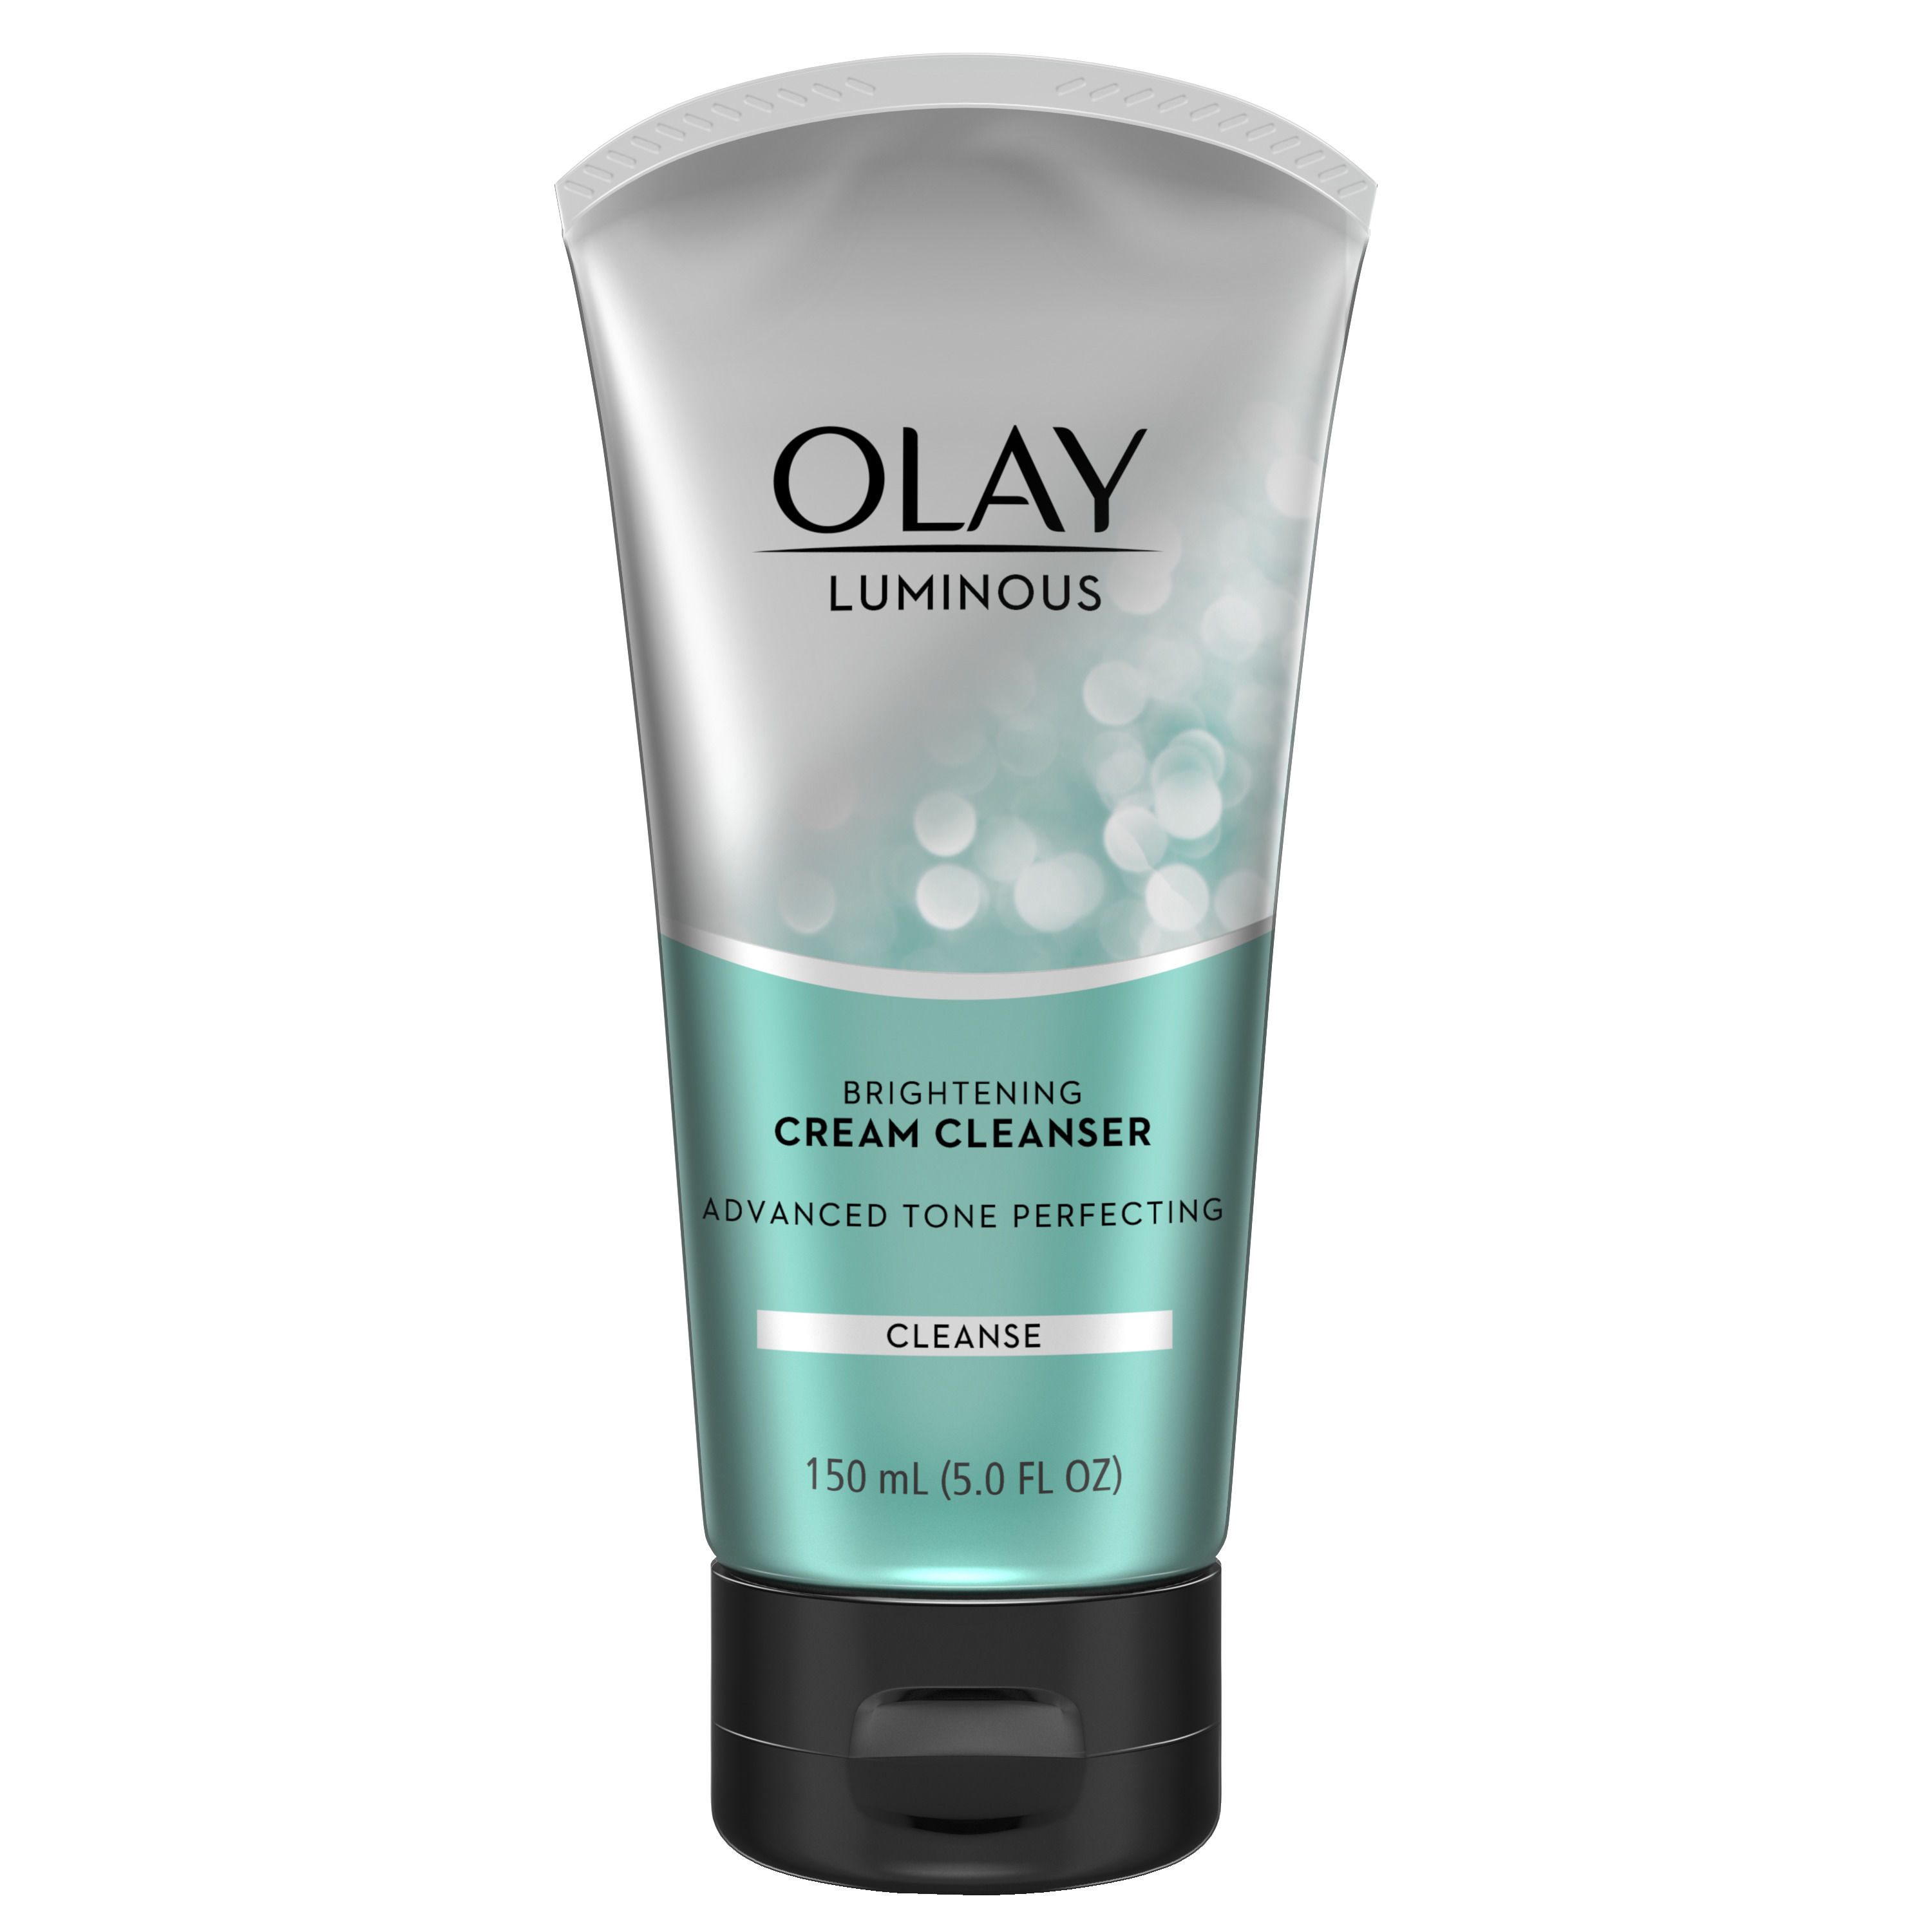 Olay Luminous Brightening Cream Face Cleanser, 5.0 fl oz